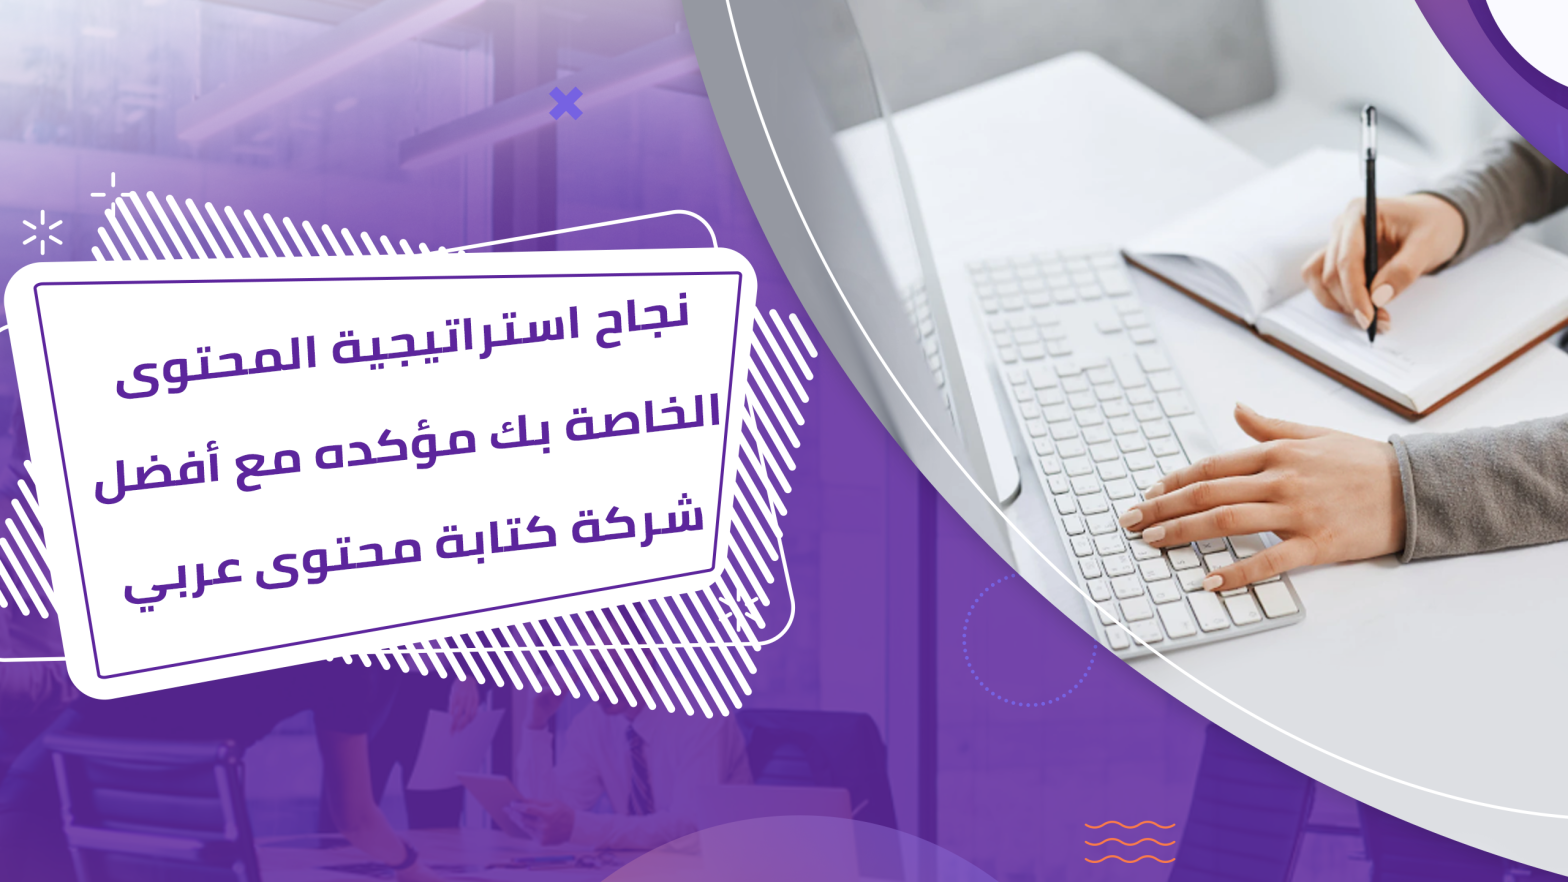 نجاح استراتيجية المحتوى الخاصة بك مؤكده مع أفضل شركة كتابة محتوى عربي